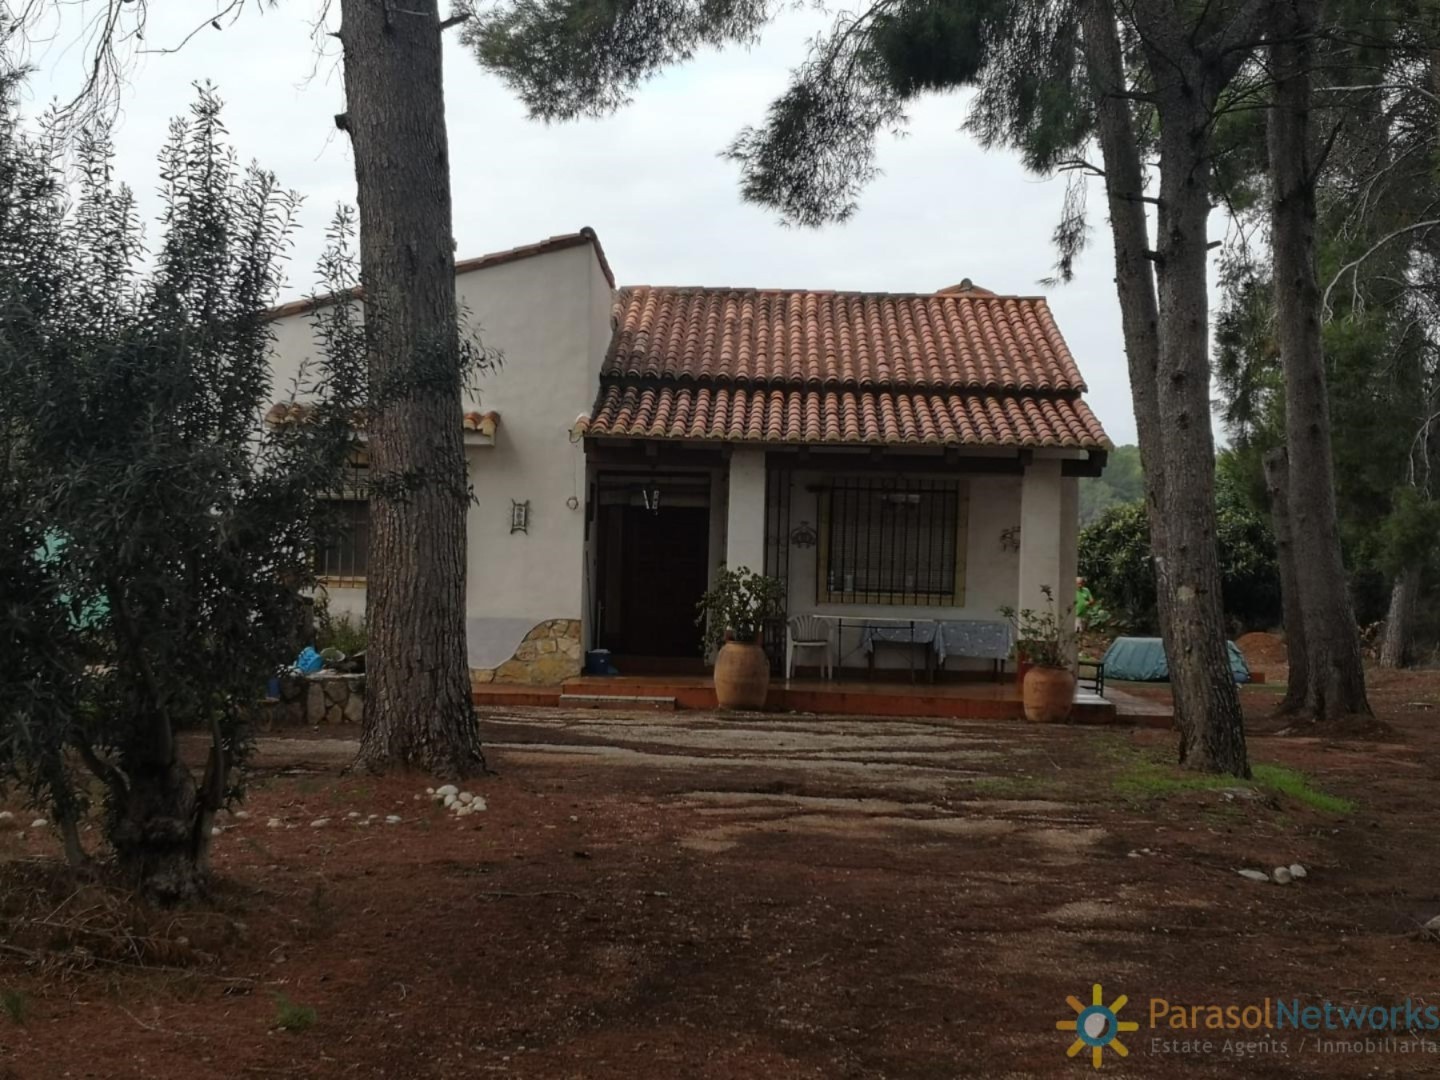 Villa for sale in Villanueva de Castellon- Ref:2041